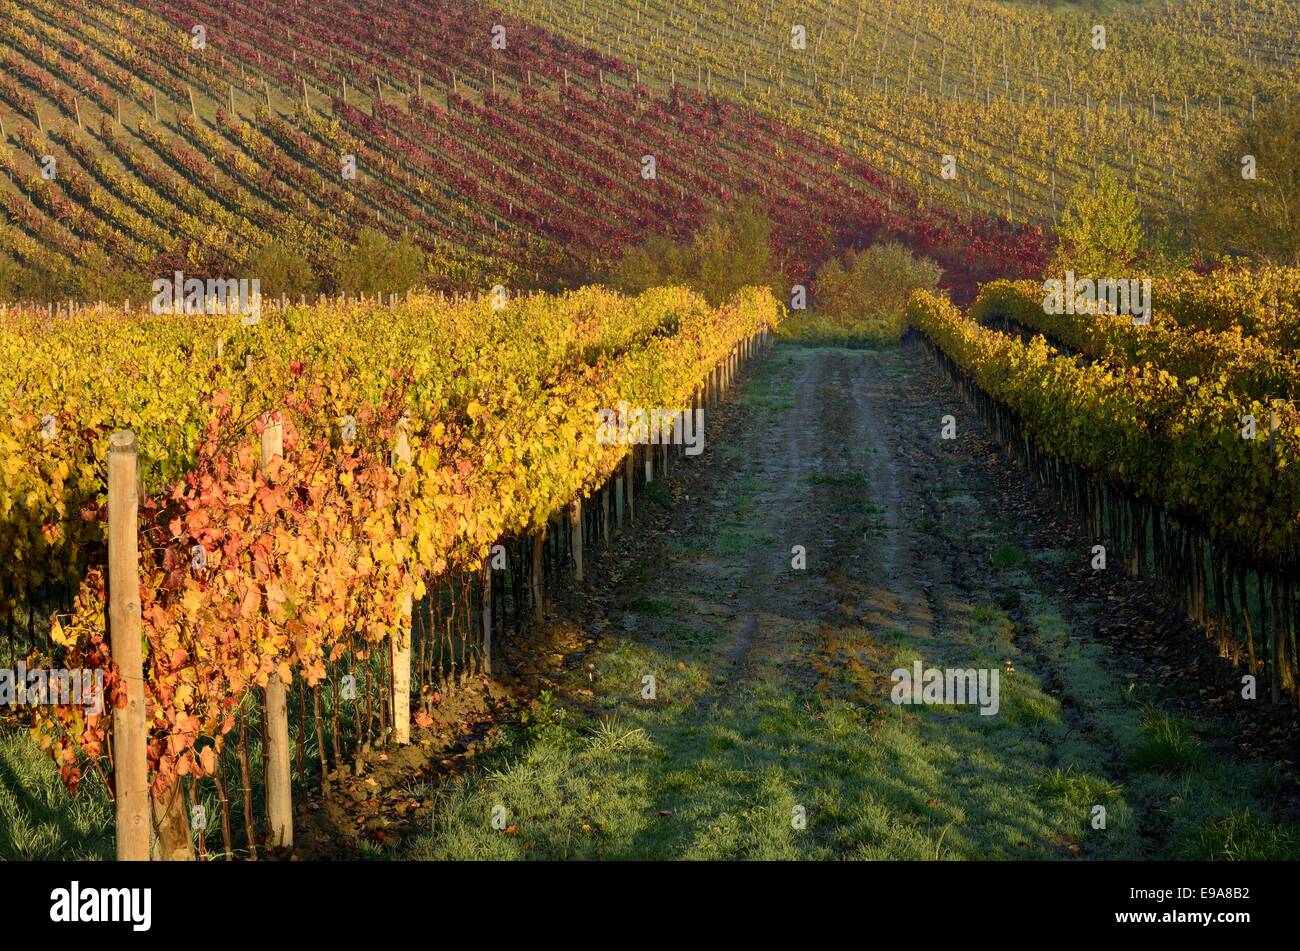 Vineyards in autumn Stock Photo